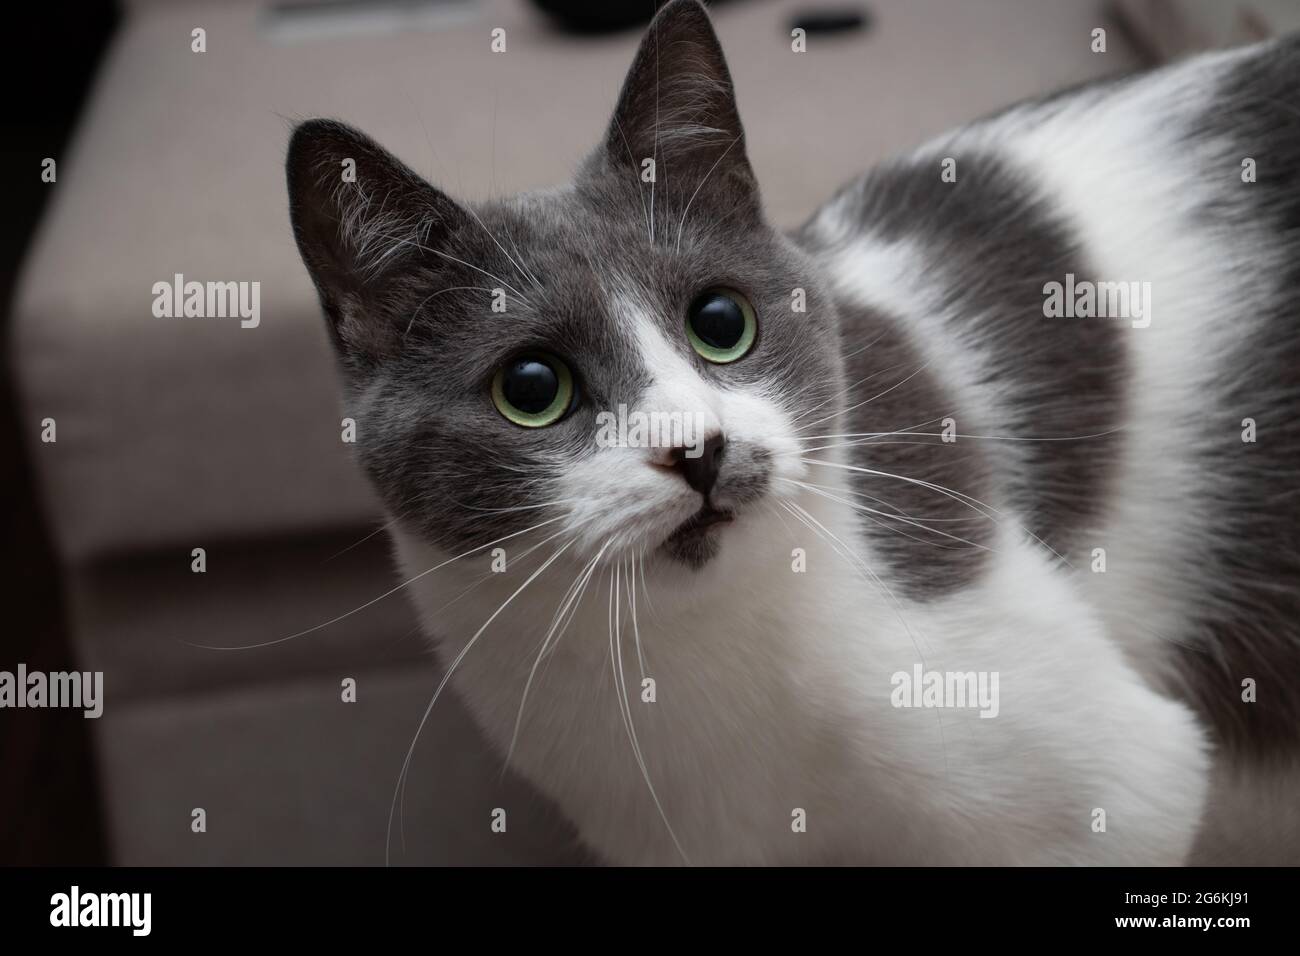 Portrait de chat surpris. Drôle de chat curieux avec de grands yeux. Banque D'Images